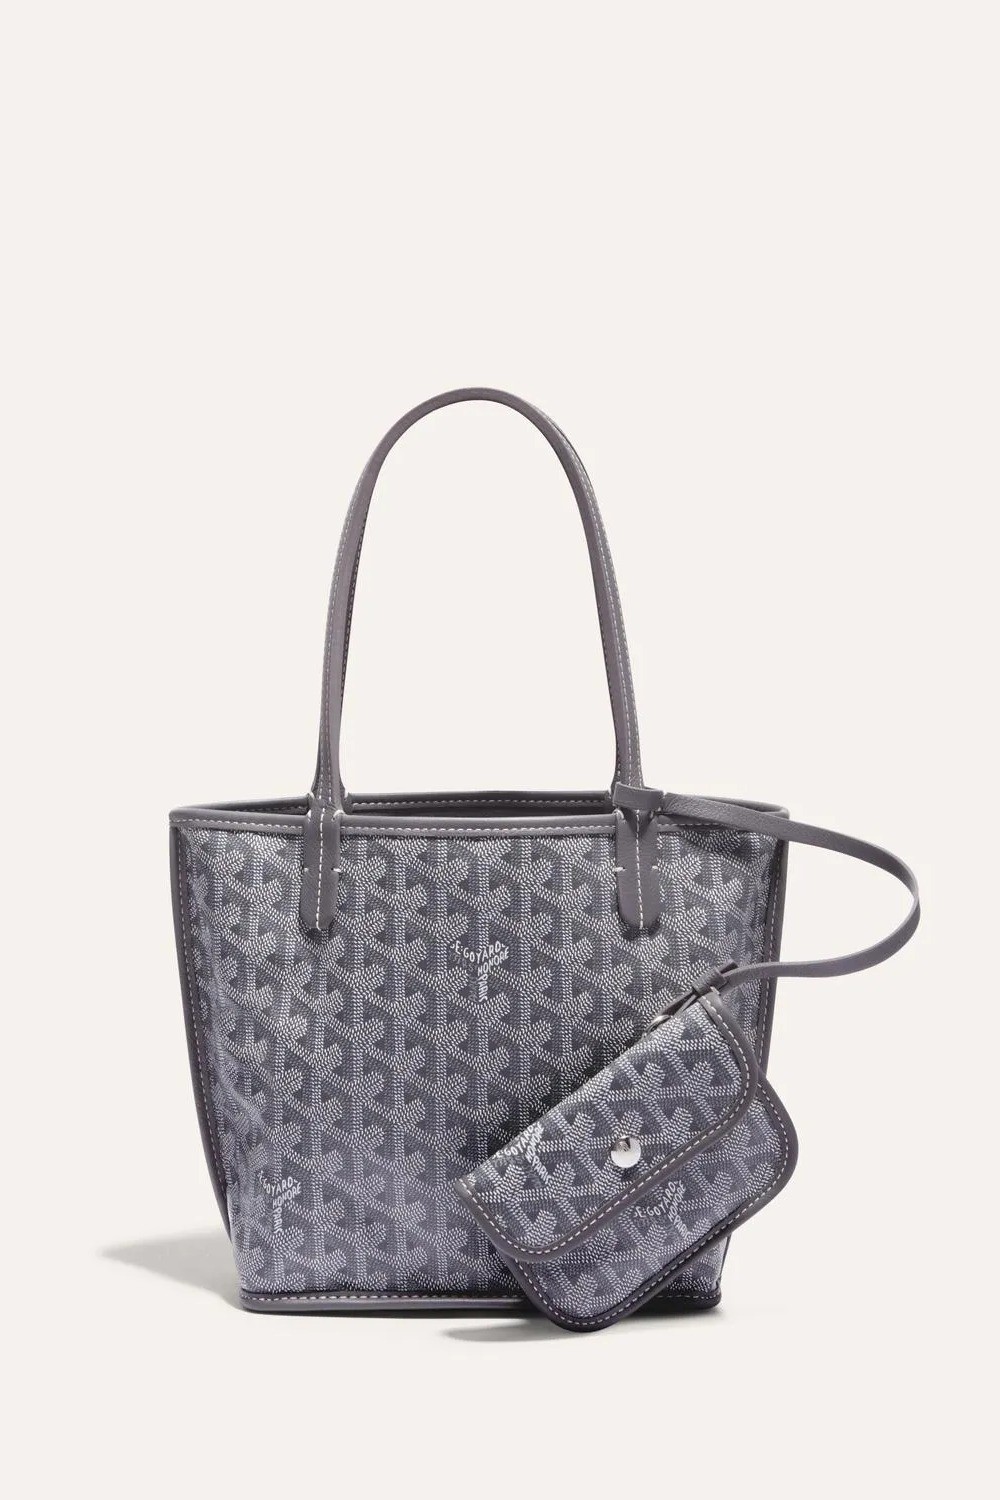 Goyard - Anjou Mini Bag - Gray